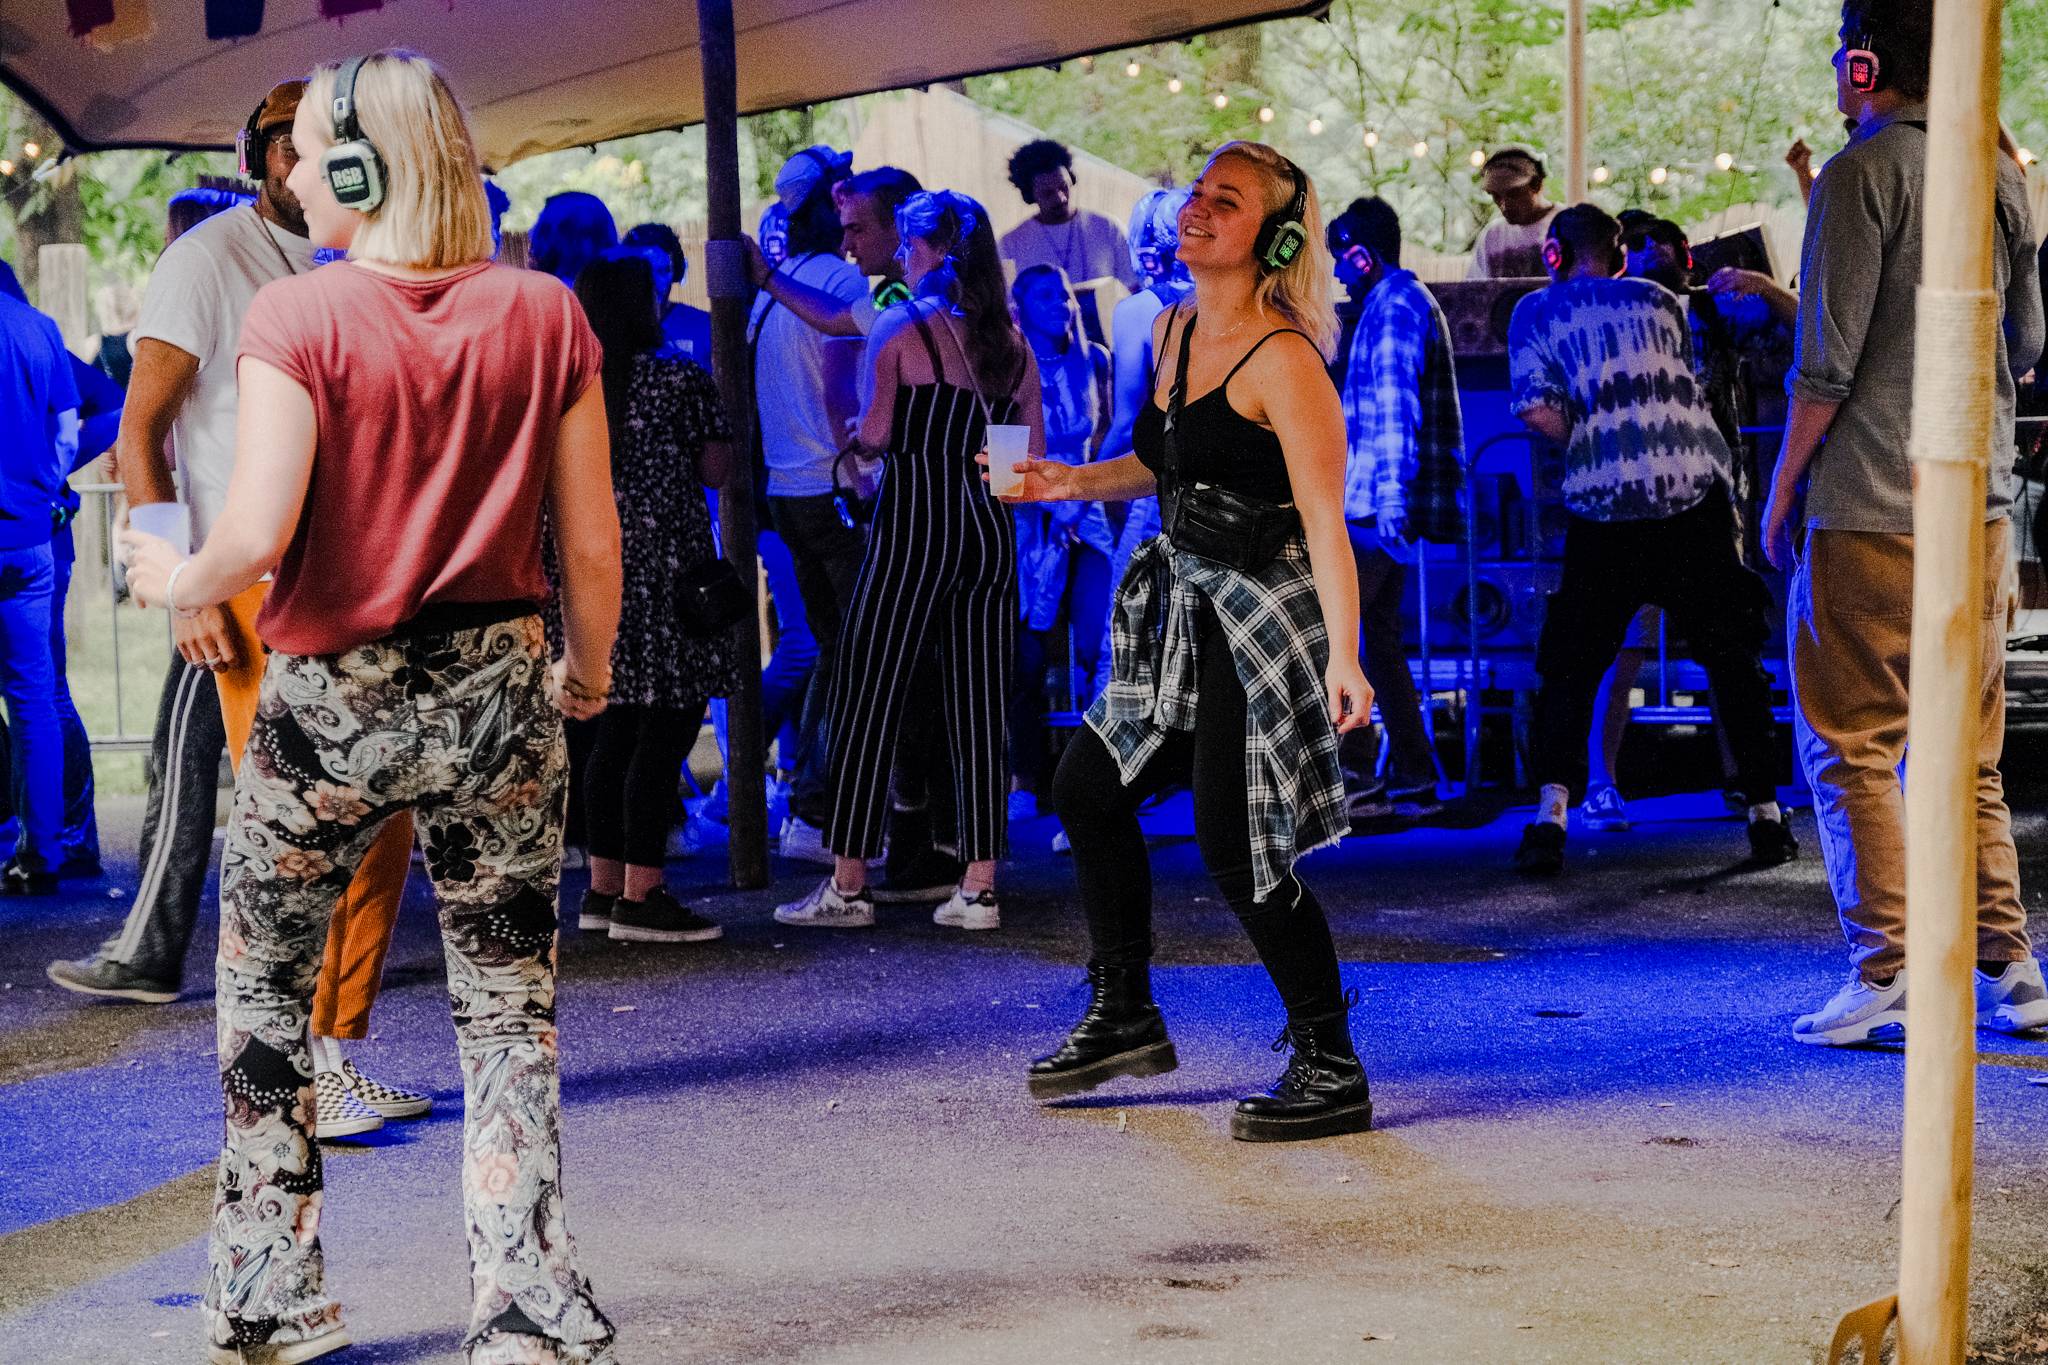 de Ontluiking deel 2 Super Zwoel en FLUOR Festival in Amersfoort dansende mensen